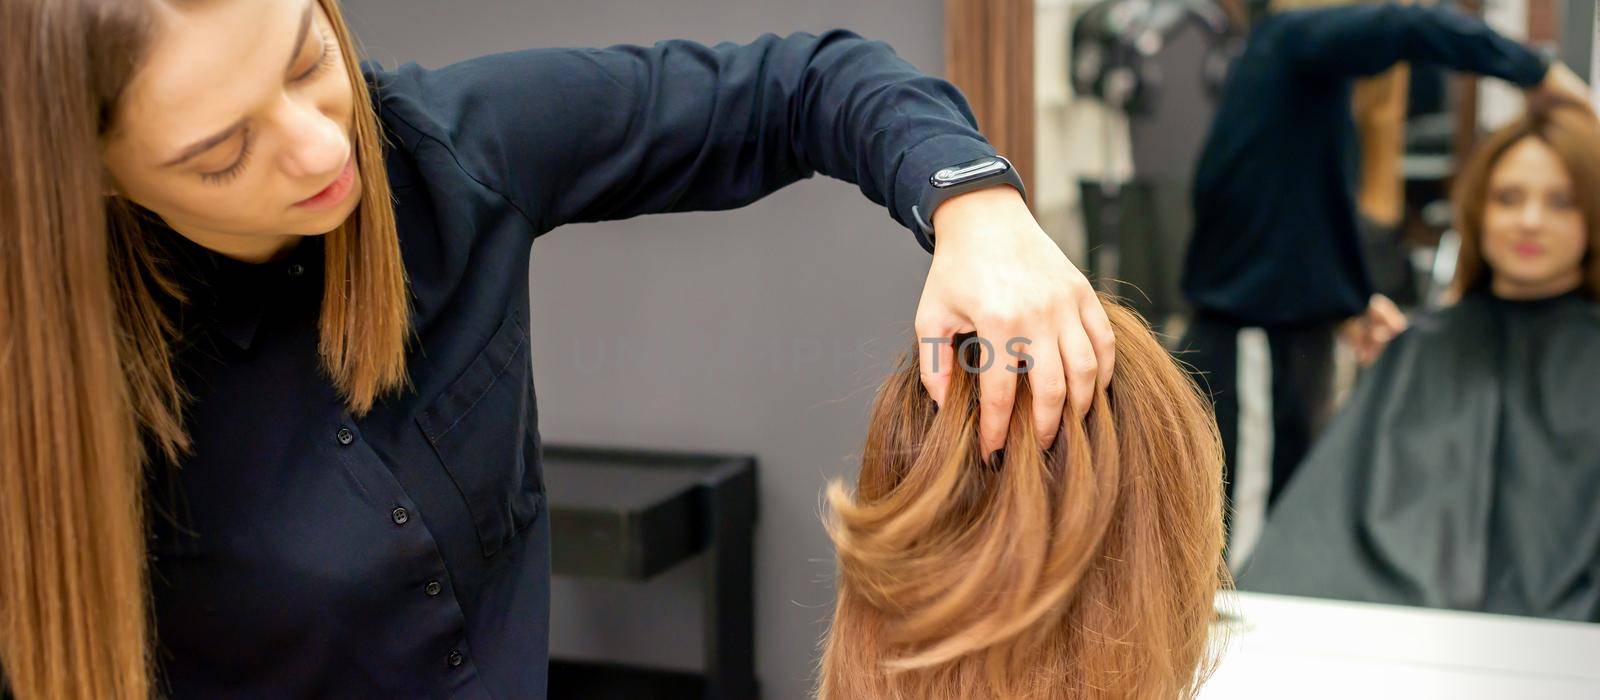 Hairdresser checks hairstyle of woman by okskukuruza